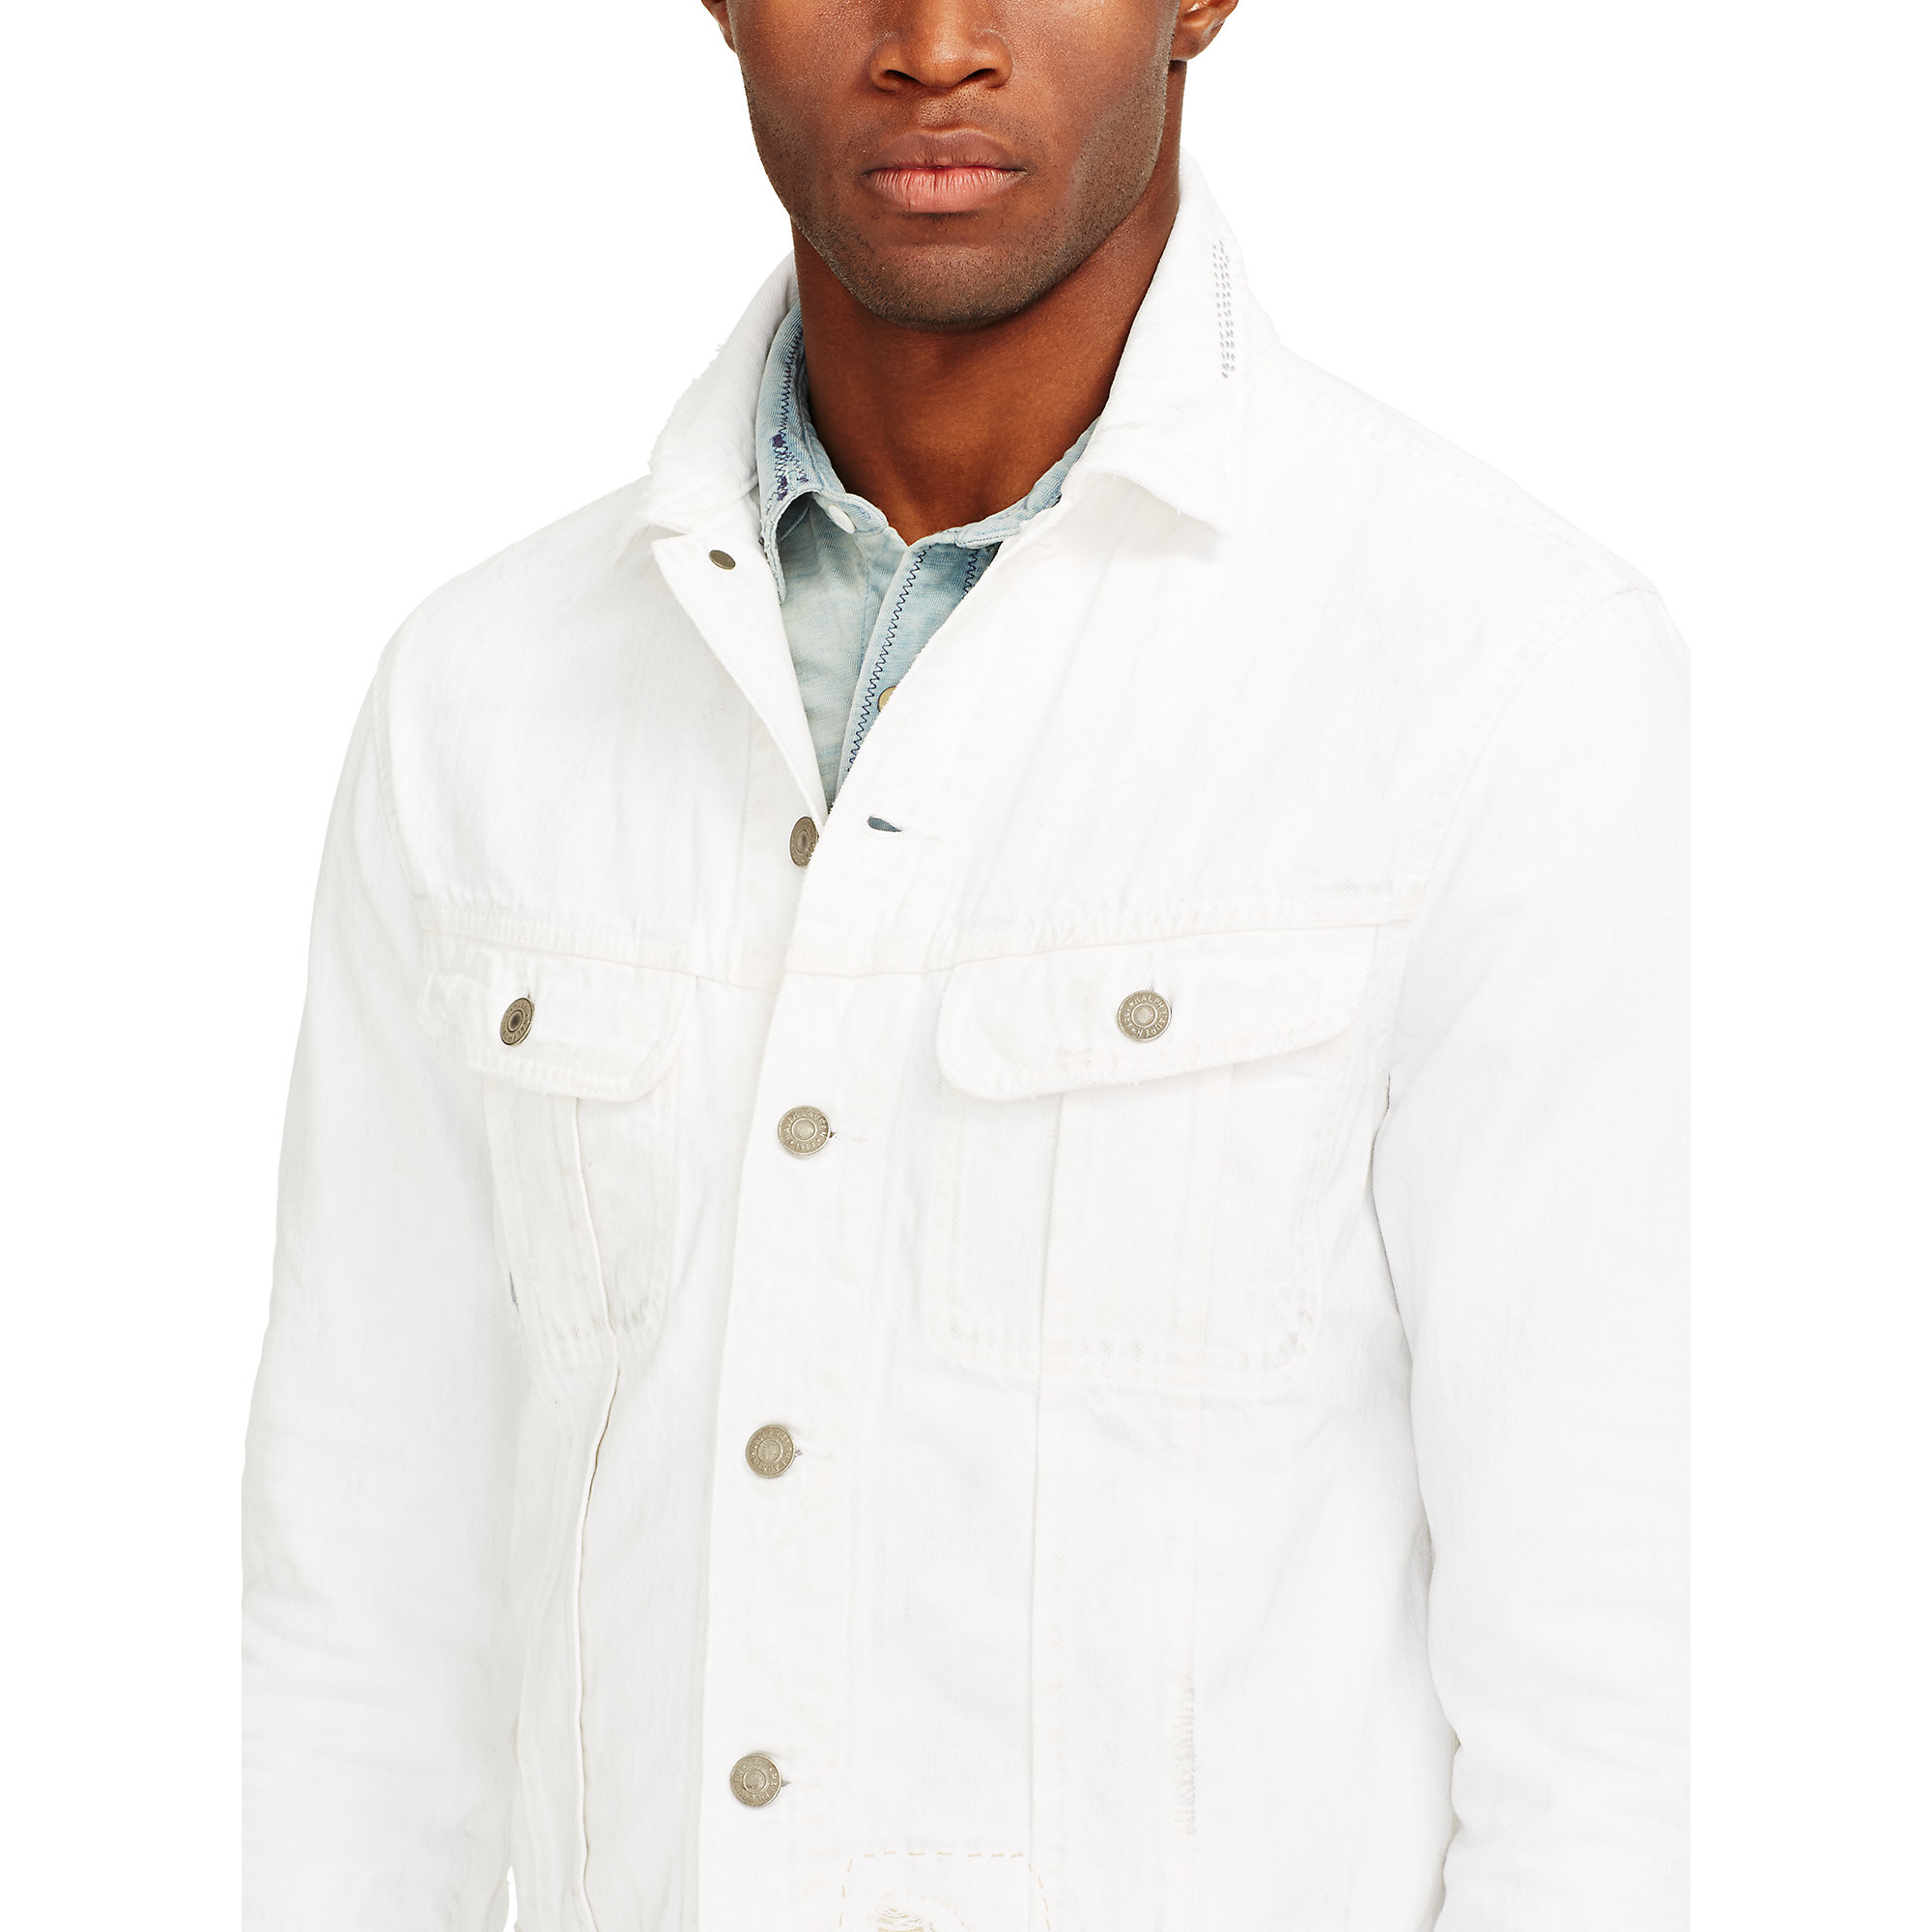 white polo jean jacket